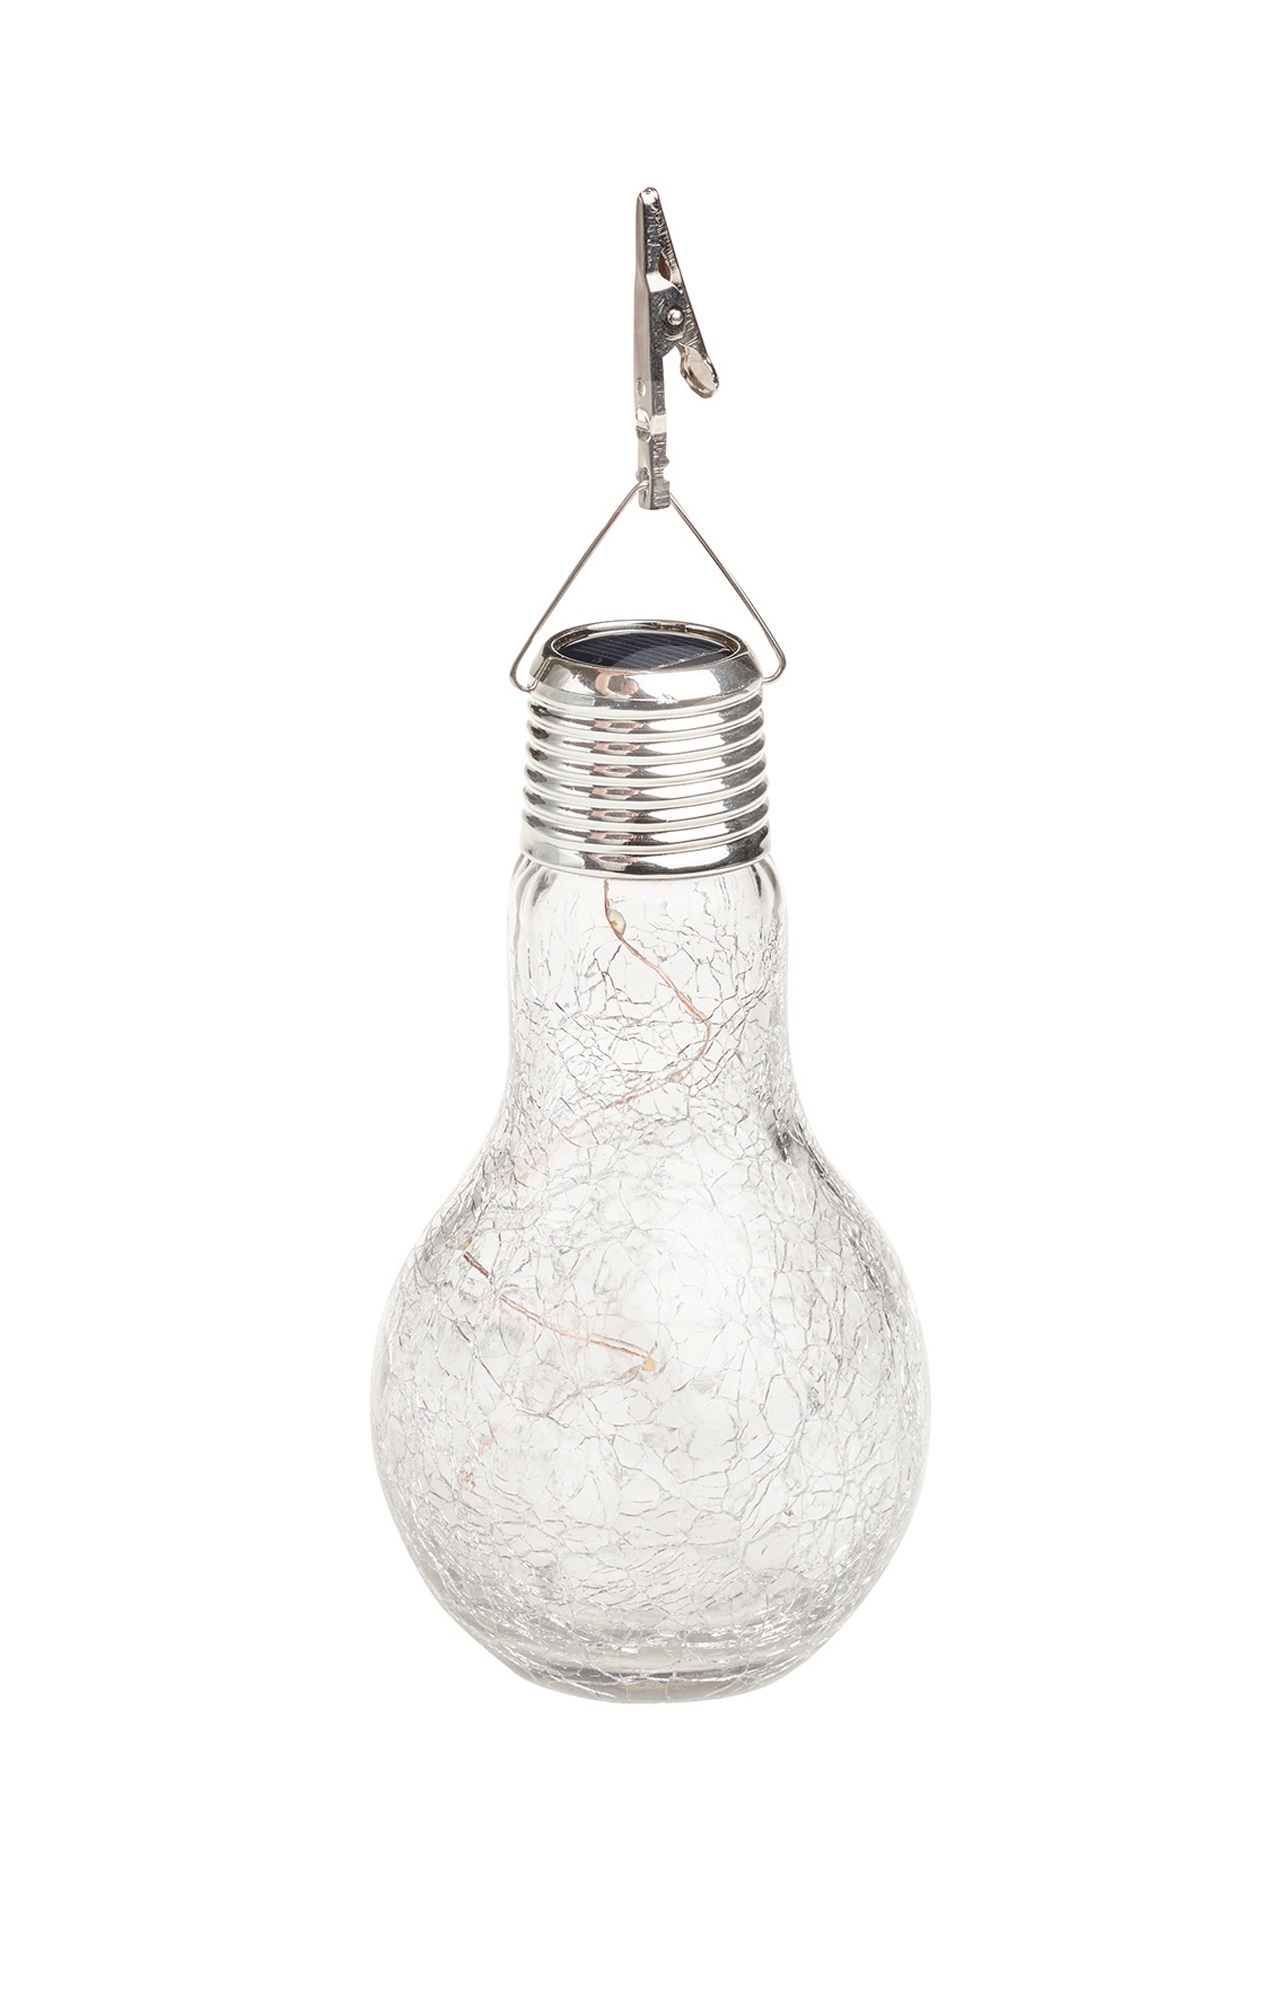 Gartenlampe, solarbetrieben, Hängelampe (kristallisiertes Glas) Gardman L23003